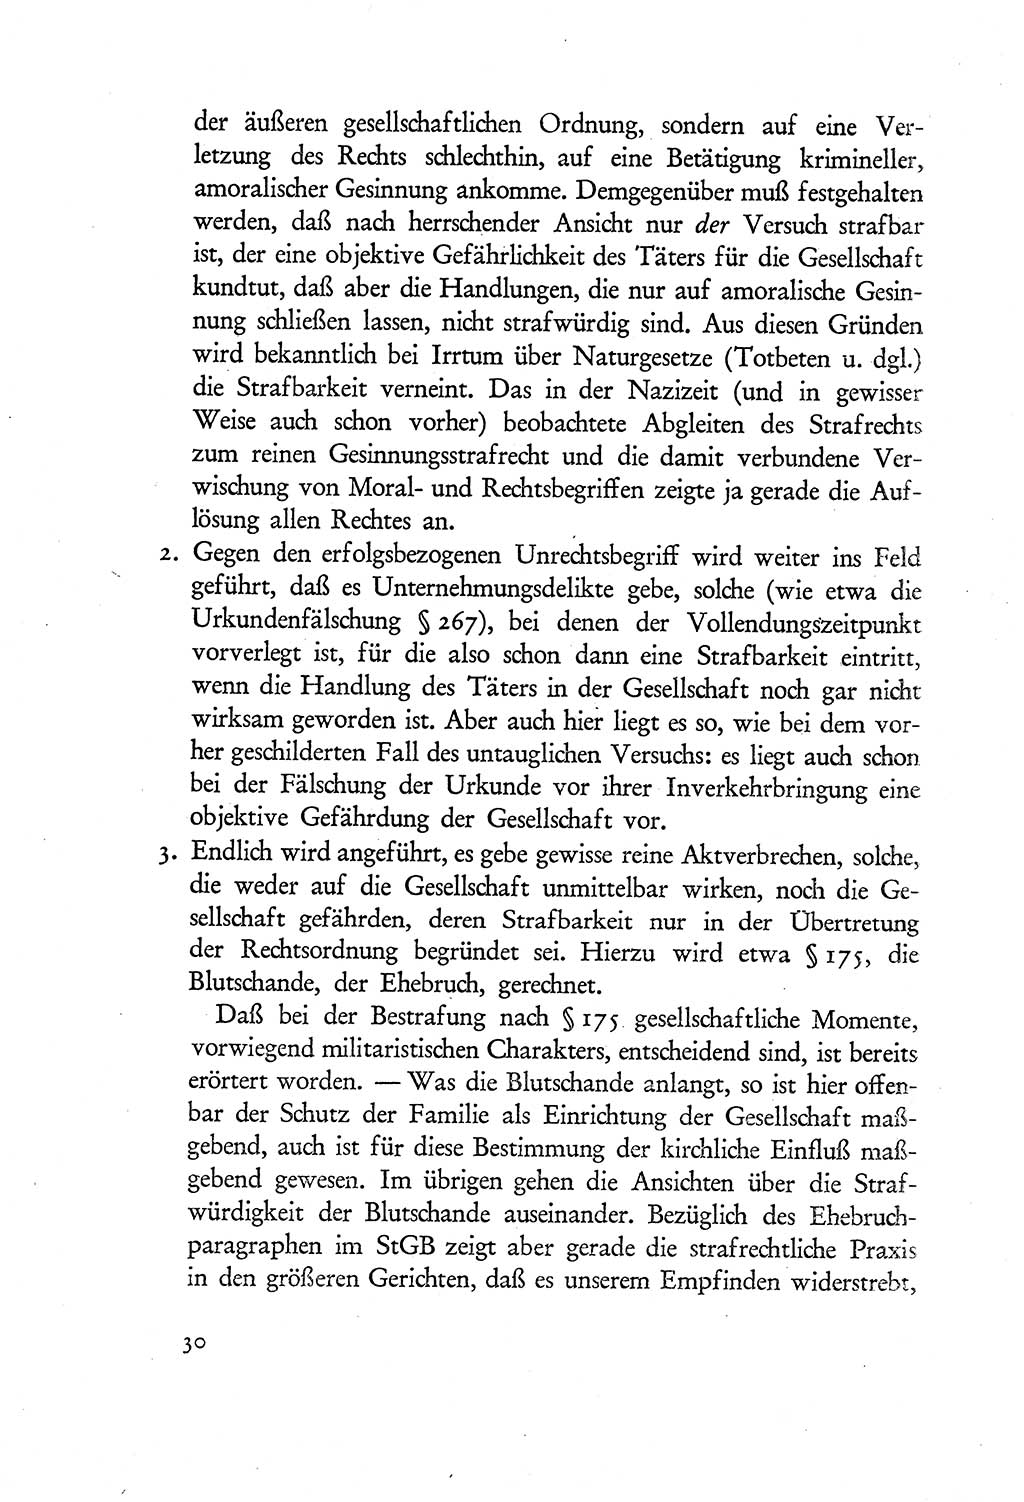 Probleme eines demokratischen Strafrechts [Sowjetische Besatzungszone (SBZ) Deutschlands] 1949, Seite 30 (Probl. Strafr. SBZ Dtl. 1949, S. 30)